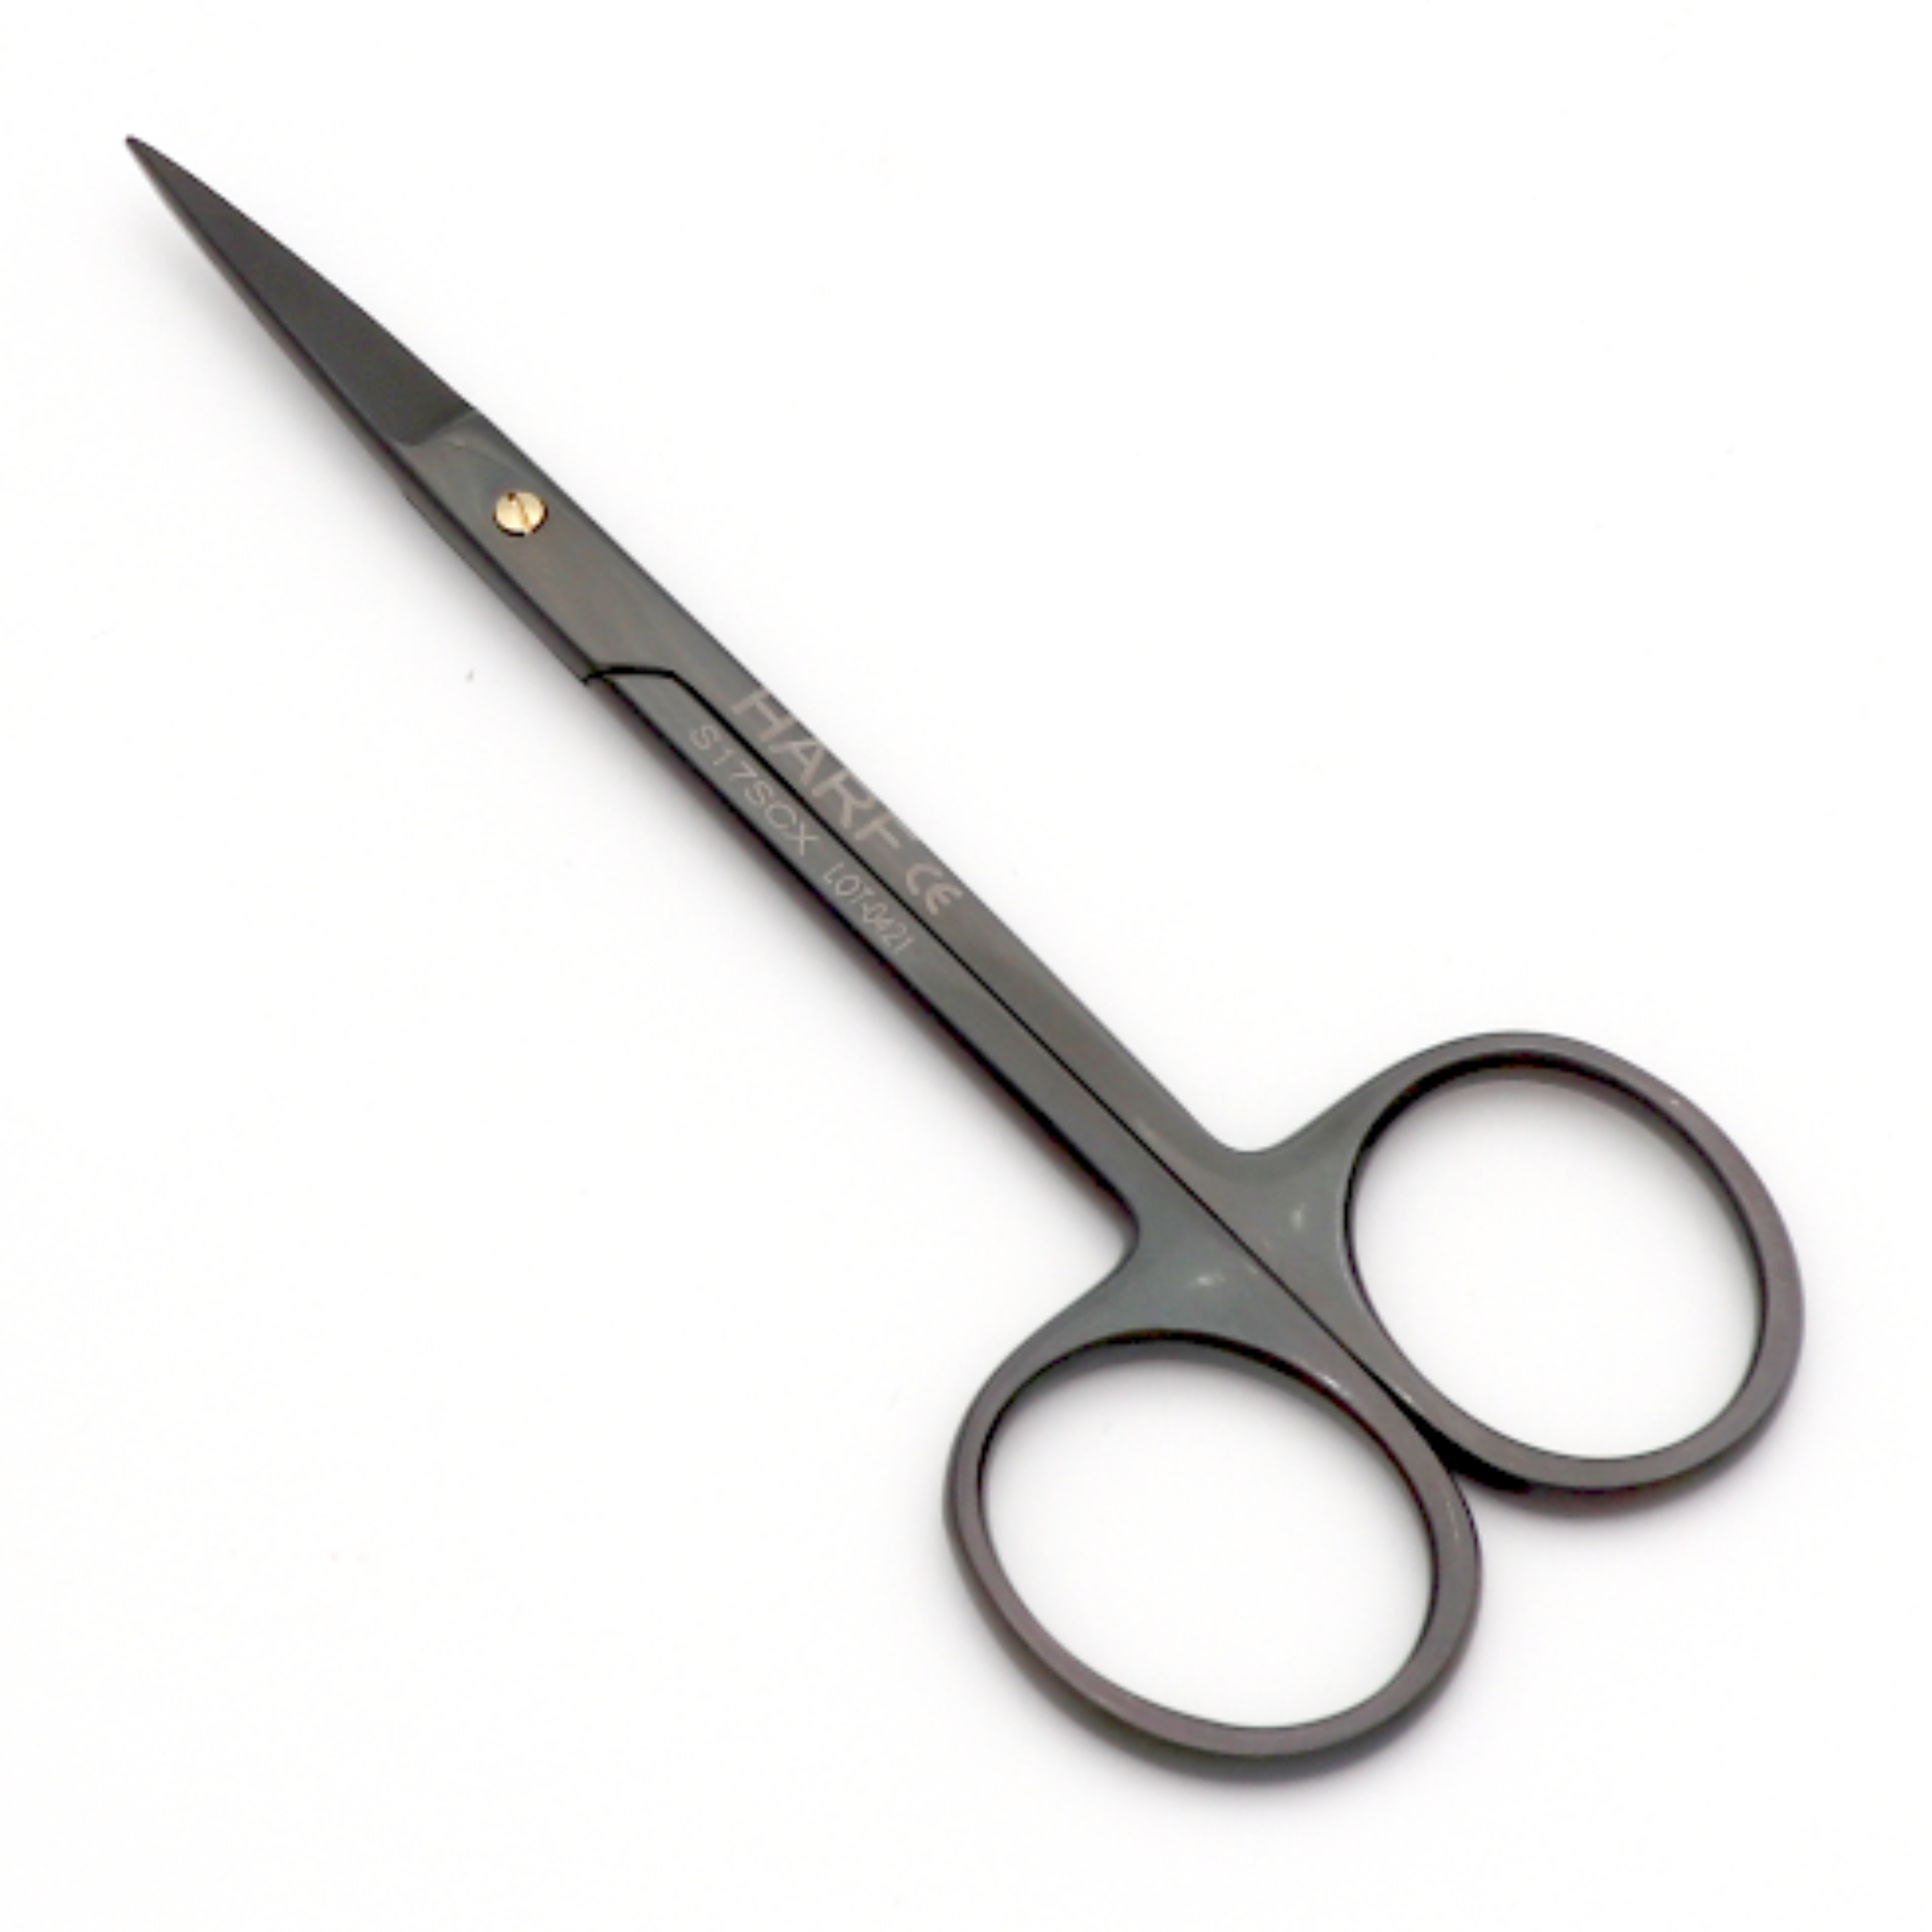 Iris Scissor Str. RC Smooth 11.5cm – HARFINS